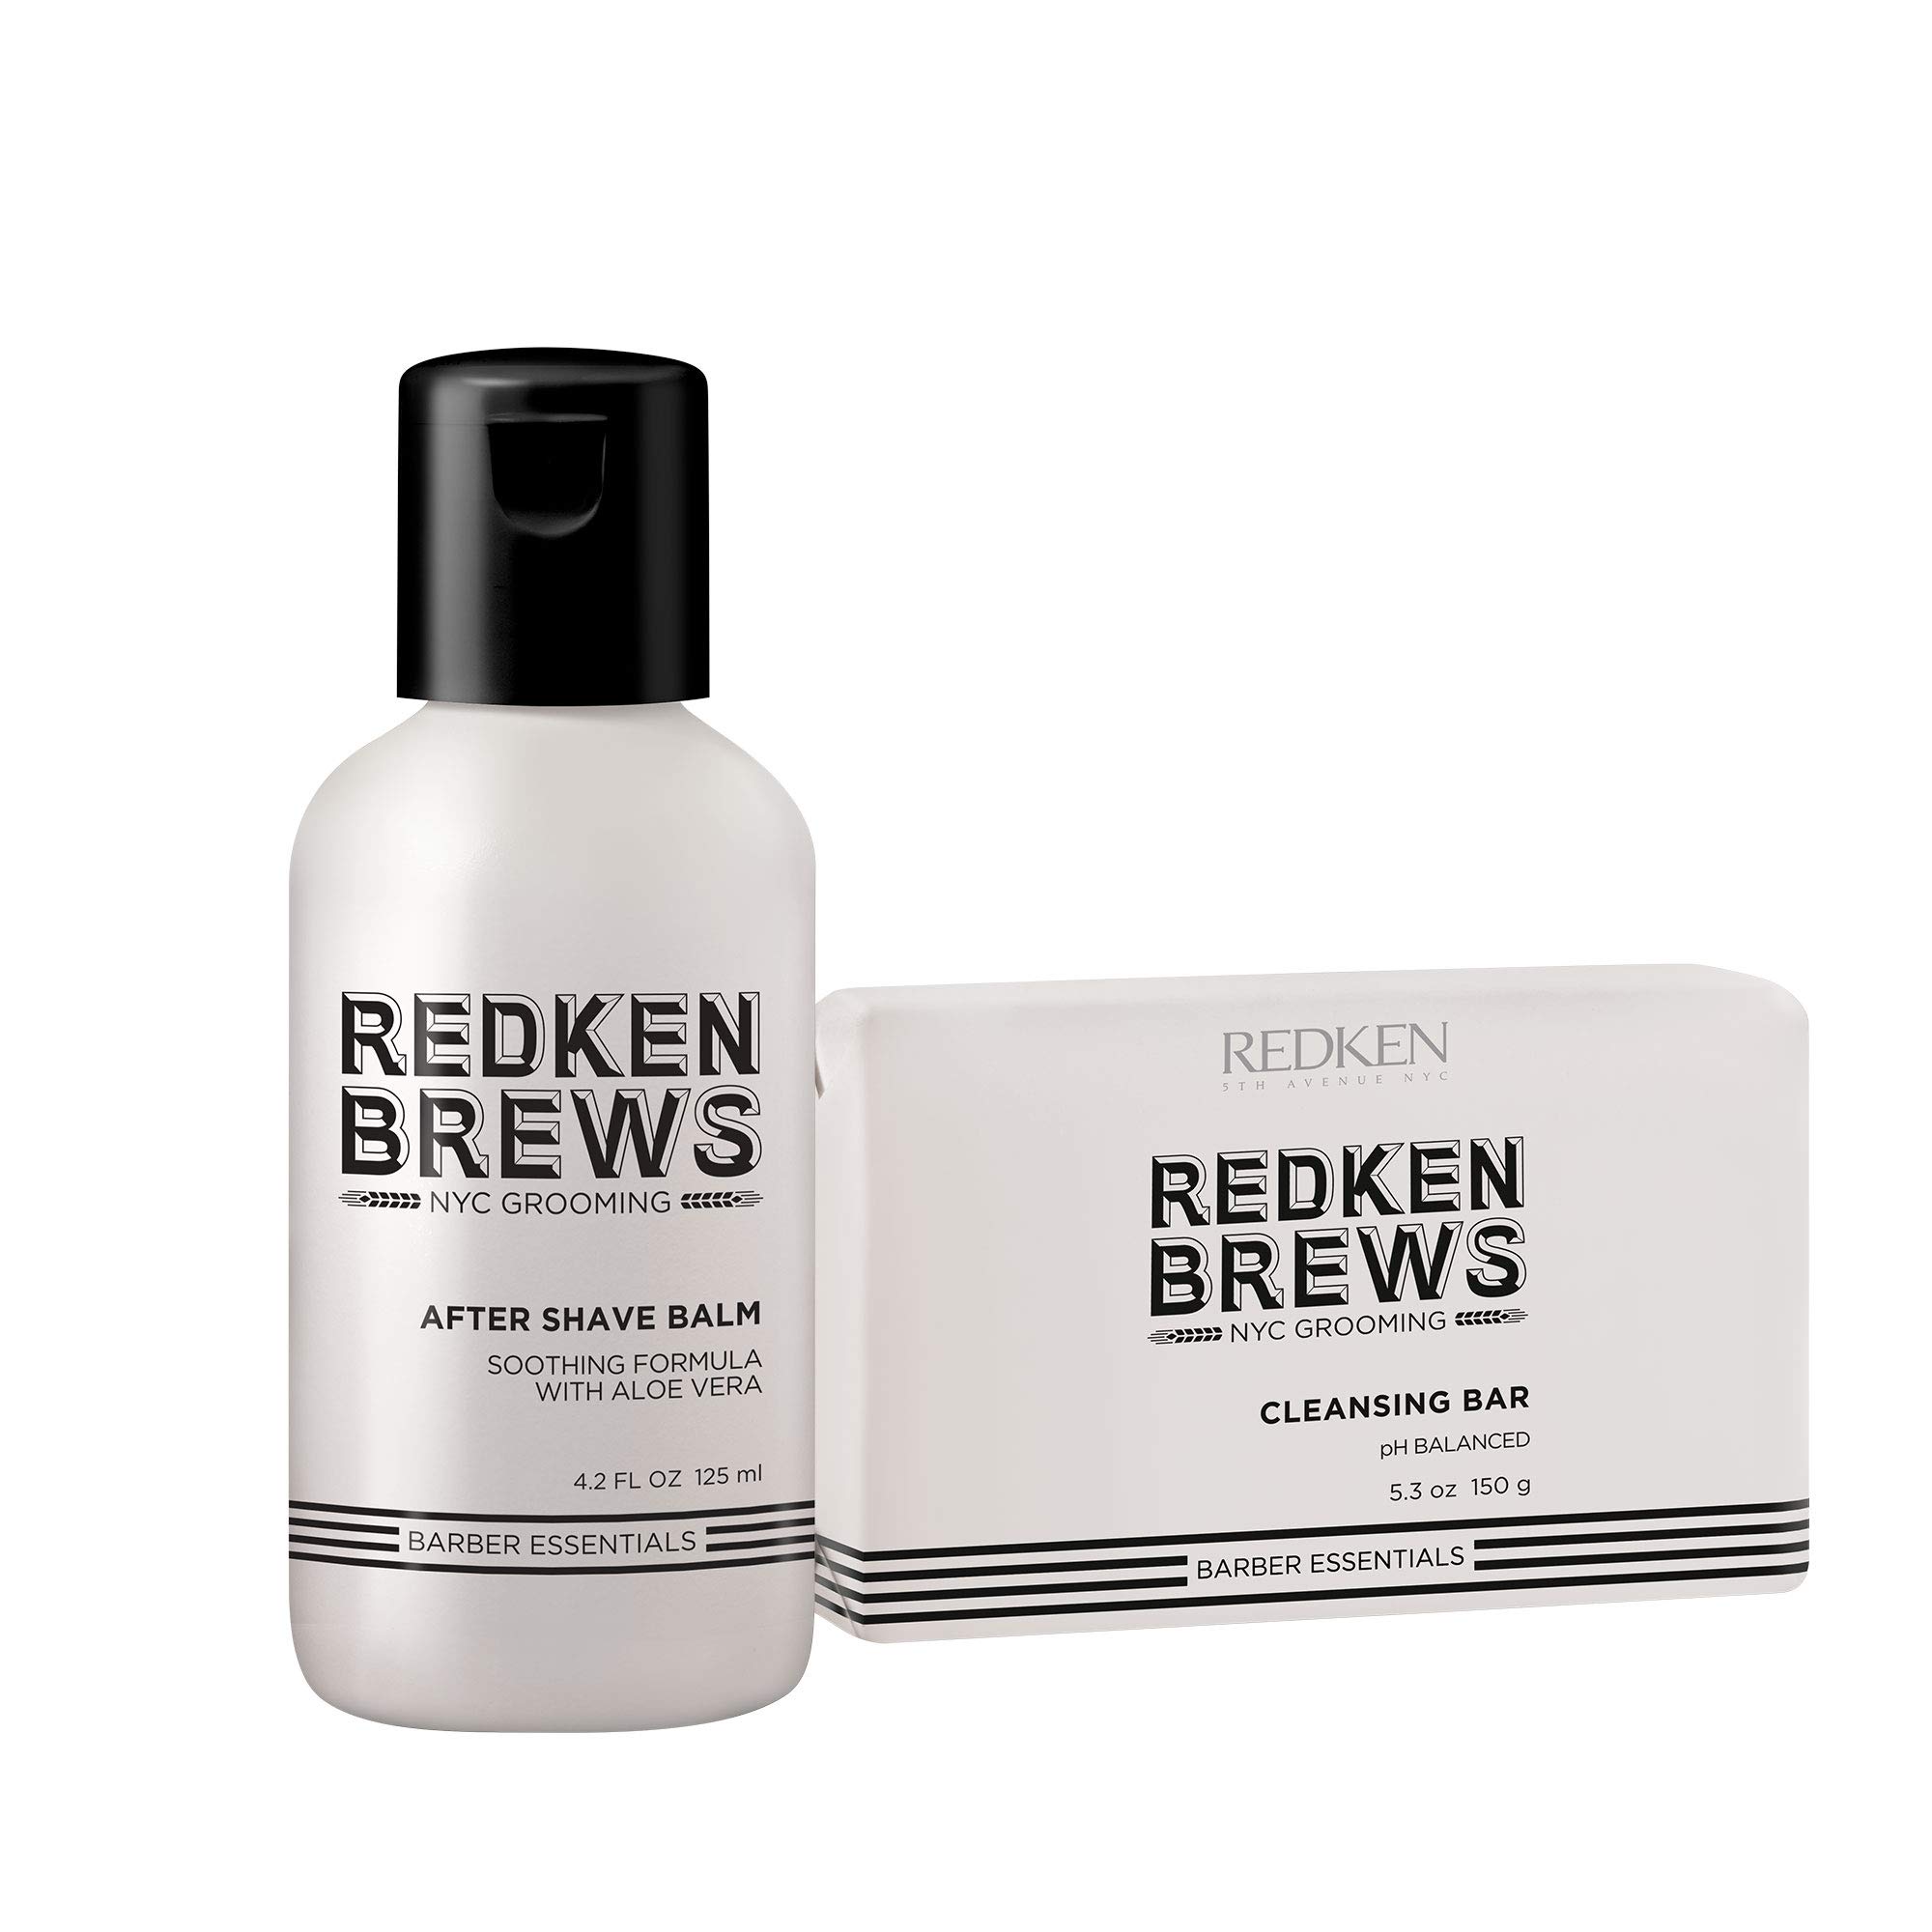 Redken Brews Body Cleansing Bar Soap For Men